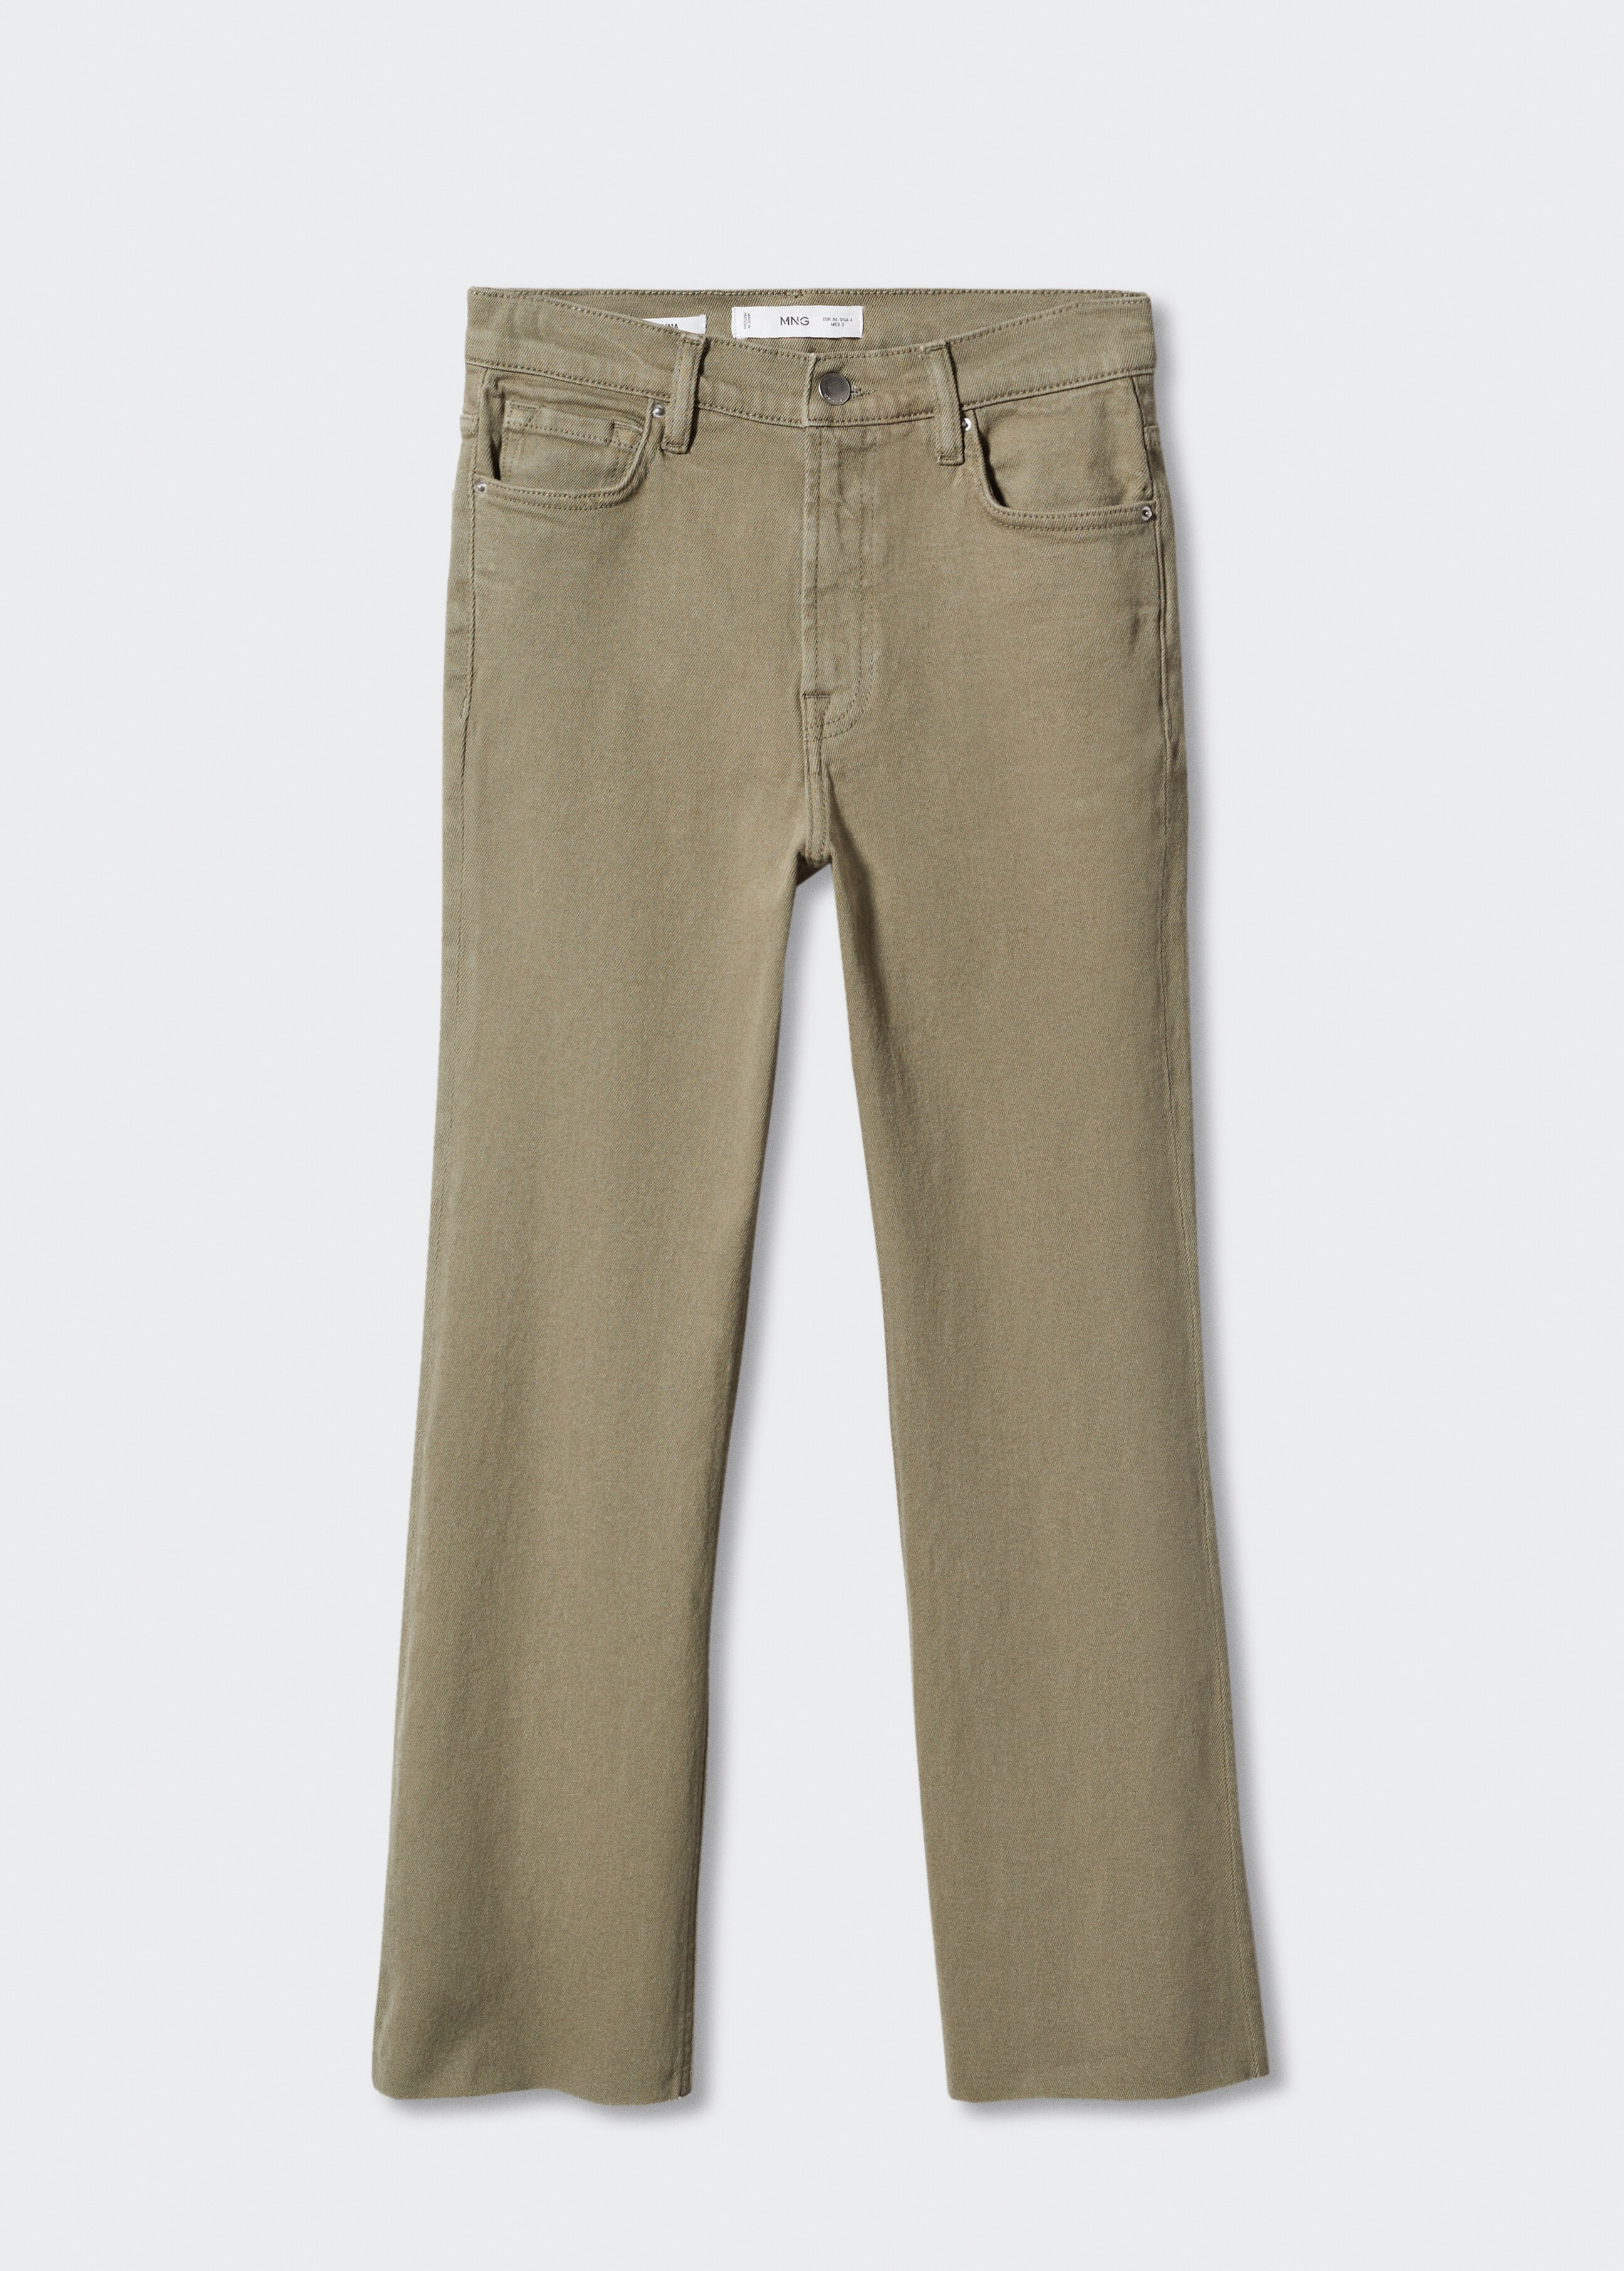 Kratší džíny flare - Zboží bez modelu